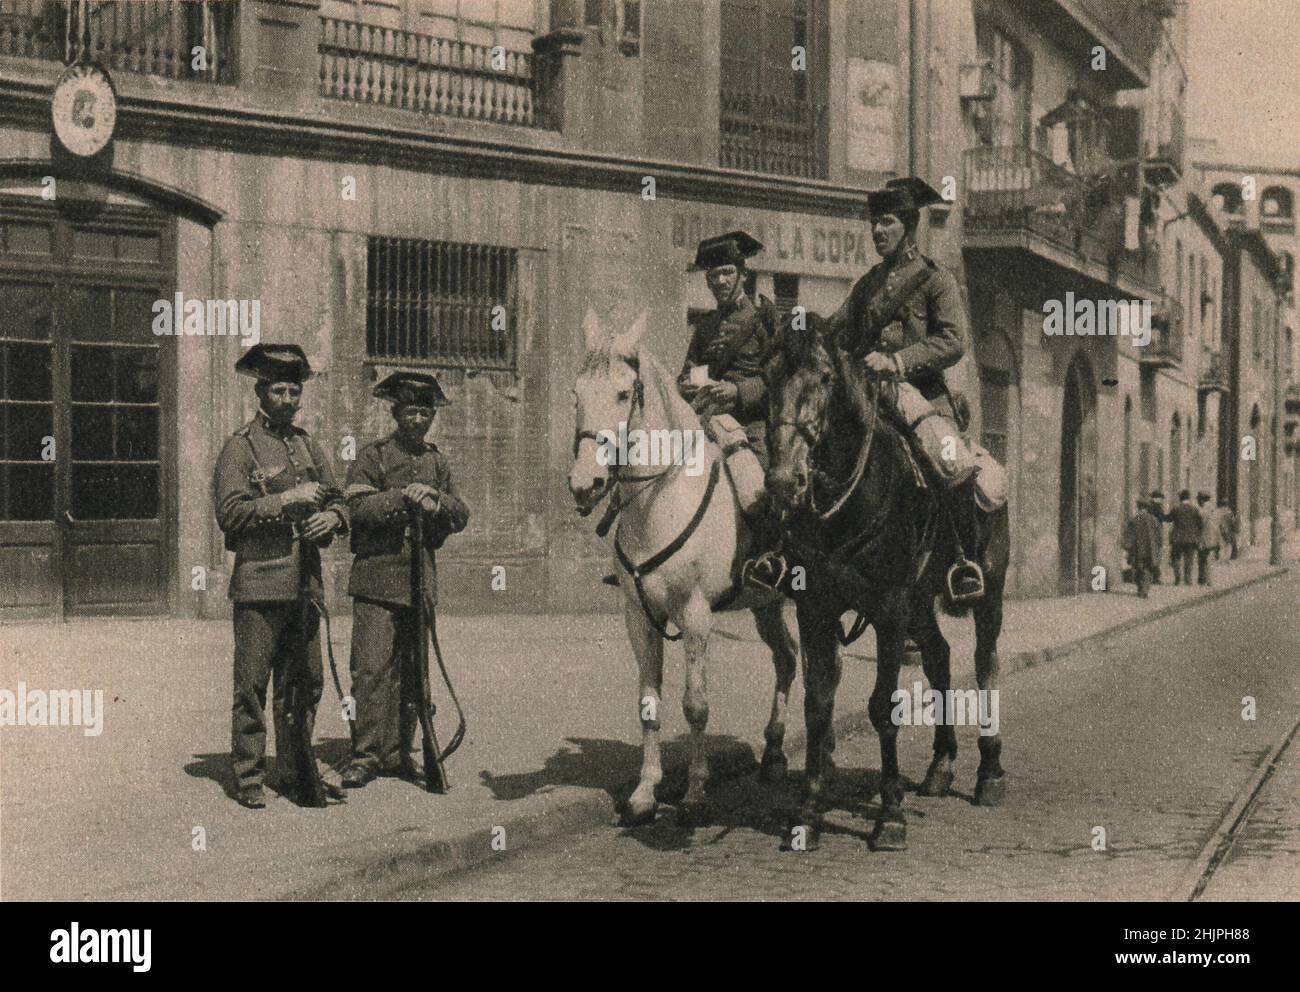 Nach dem Vorbild der Gendarmerie, die 1791 in Frankreich gegründet wurde, ist die Guardia Civil, oder Staatspolizei Spaniens, eine halbmilitärische Einrichtung. Barcelona (1923) Stockfoto